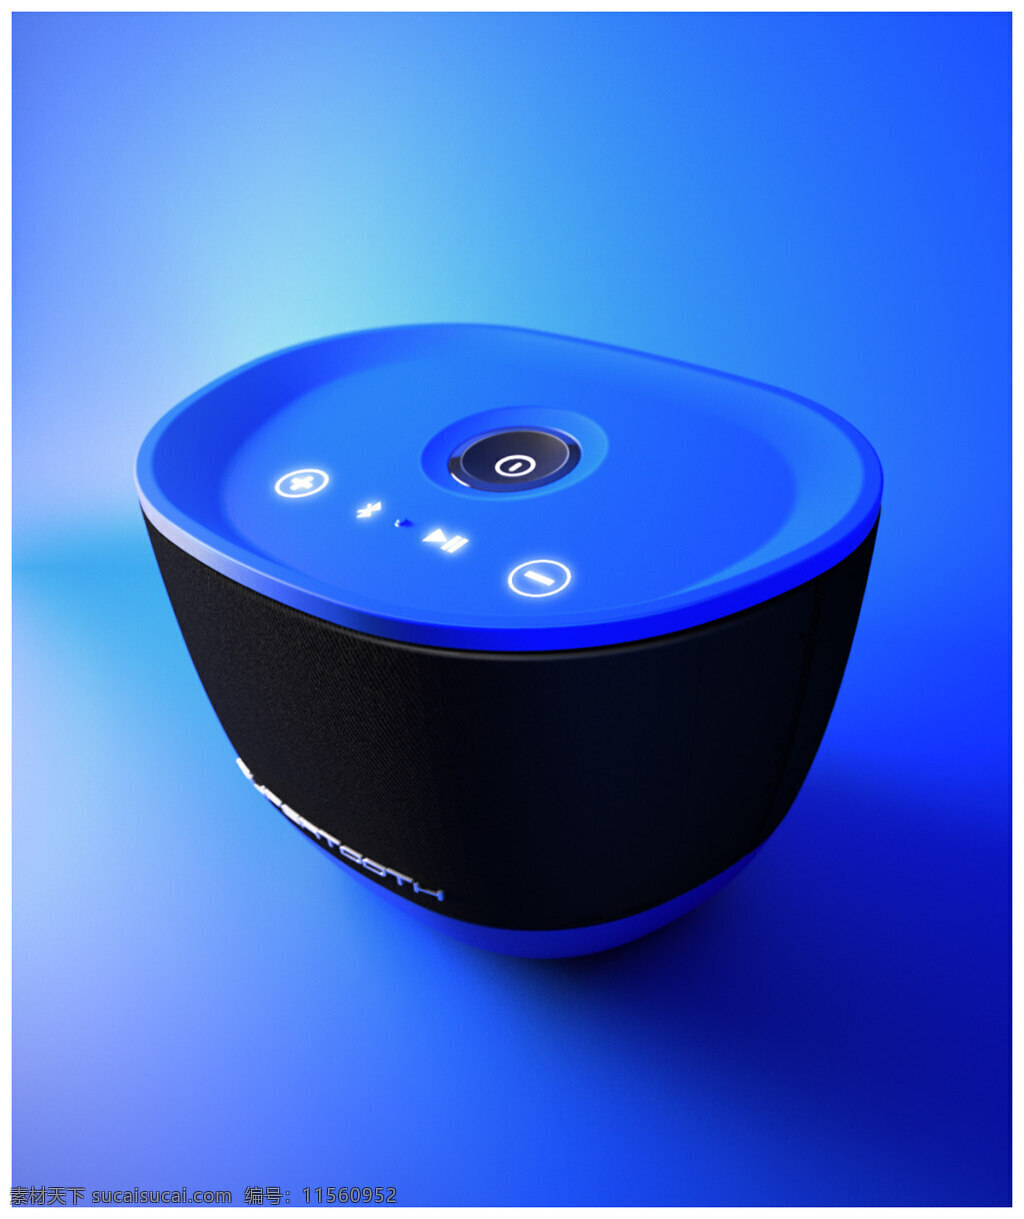 supertooth 简洁 清爽 蓝色 蓝牙 音箱 概念产品 设计图 数码